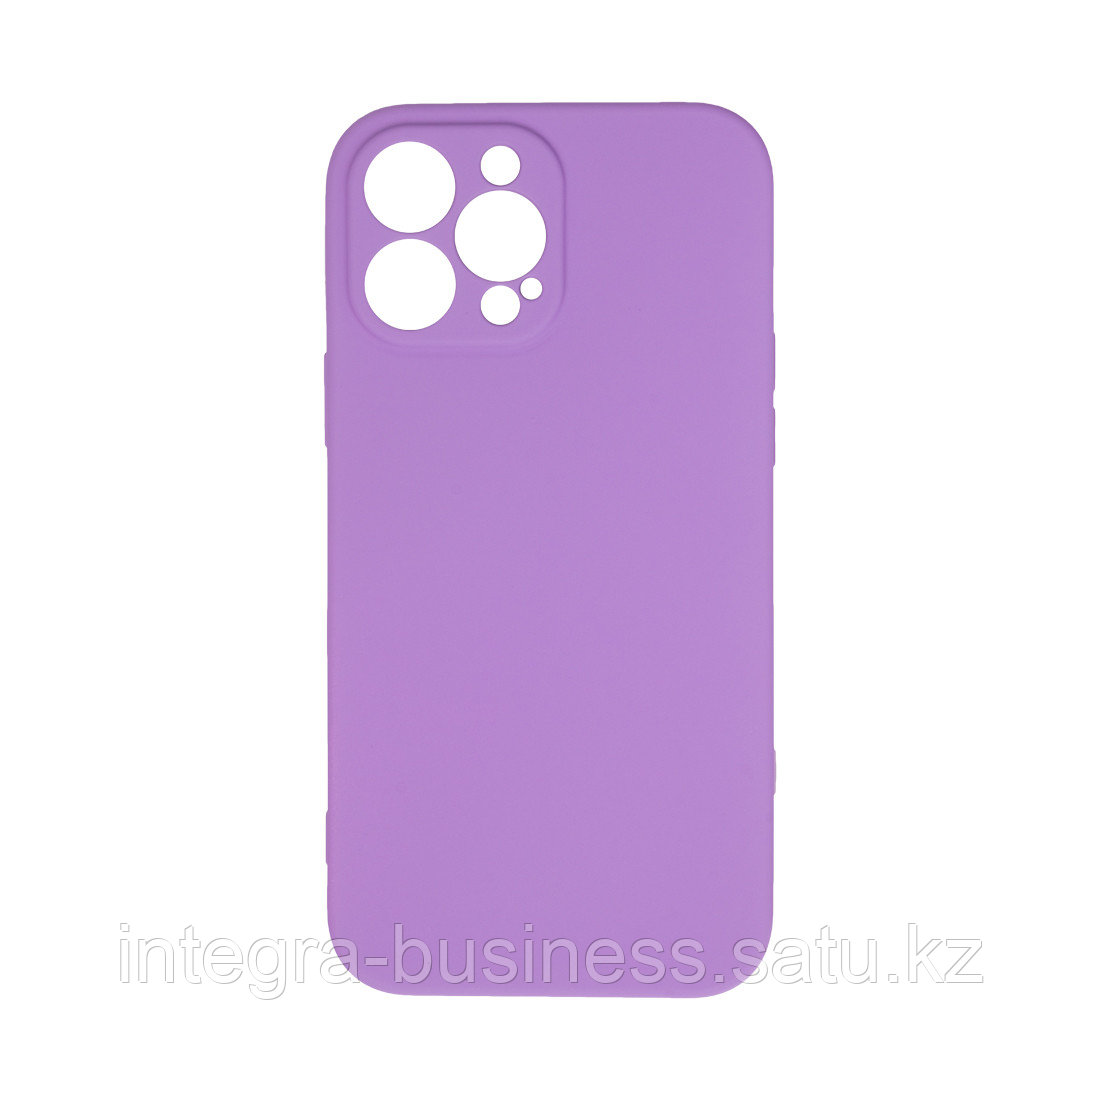 Чехол для телефона X-Game XG-HS85 для Iphone 13 Pro Max Силиконовый Фиолетовый, фото 1